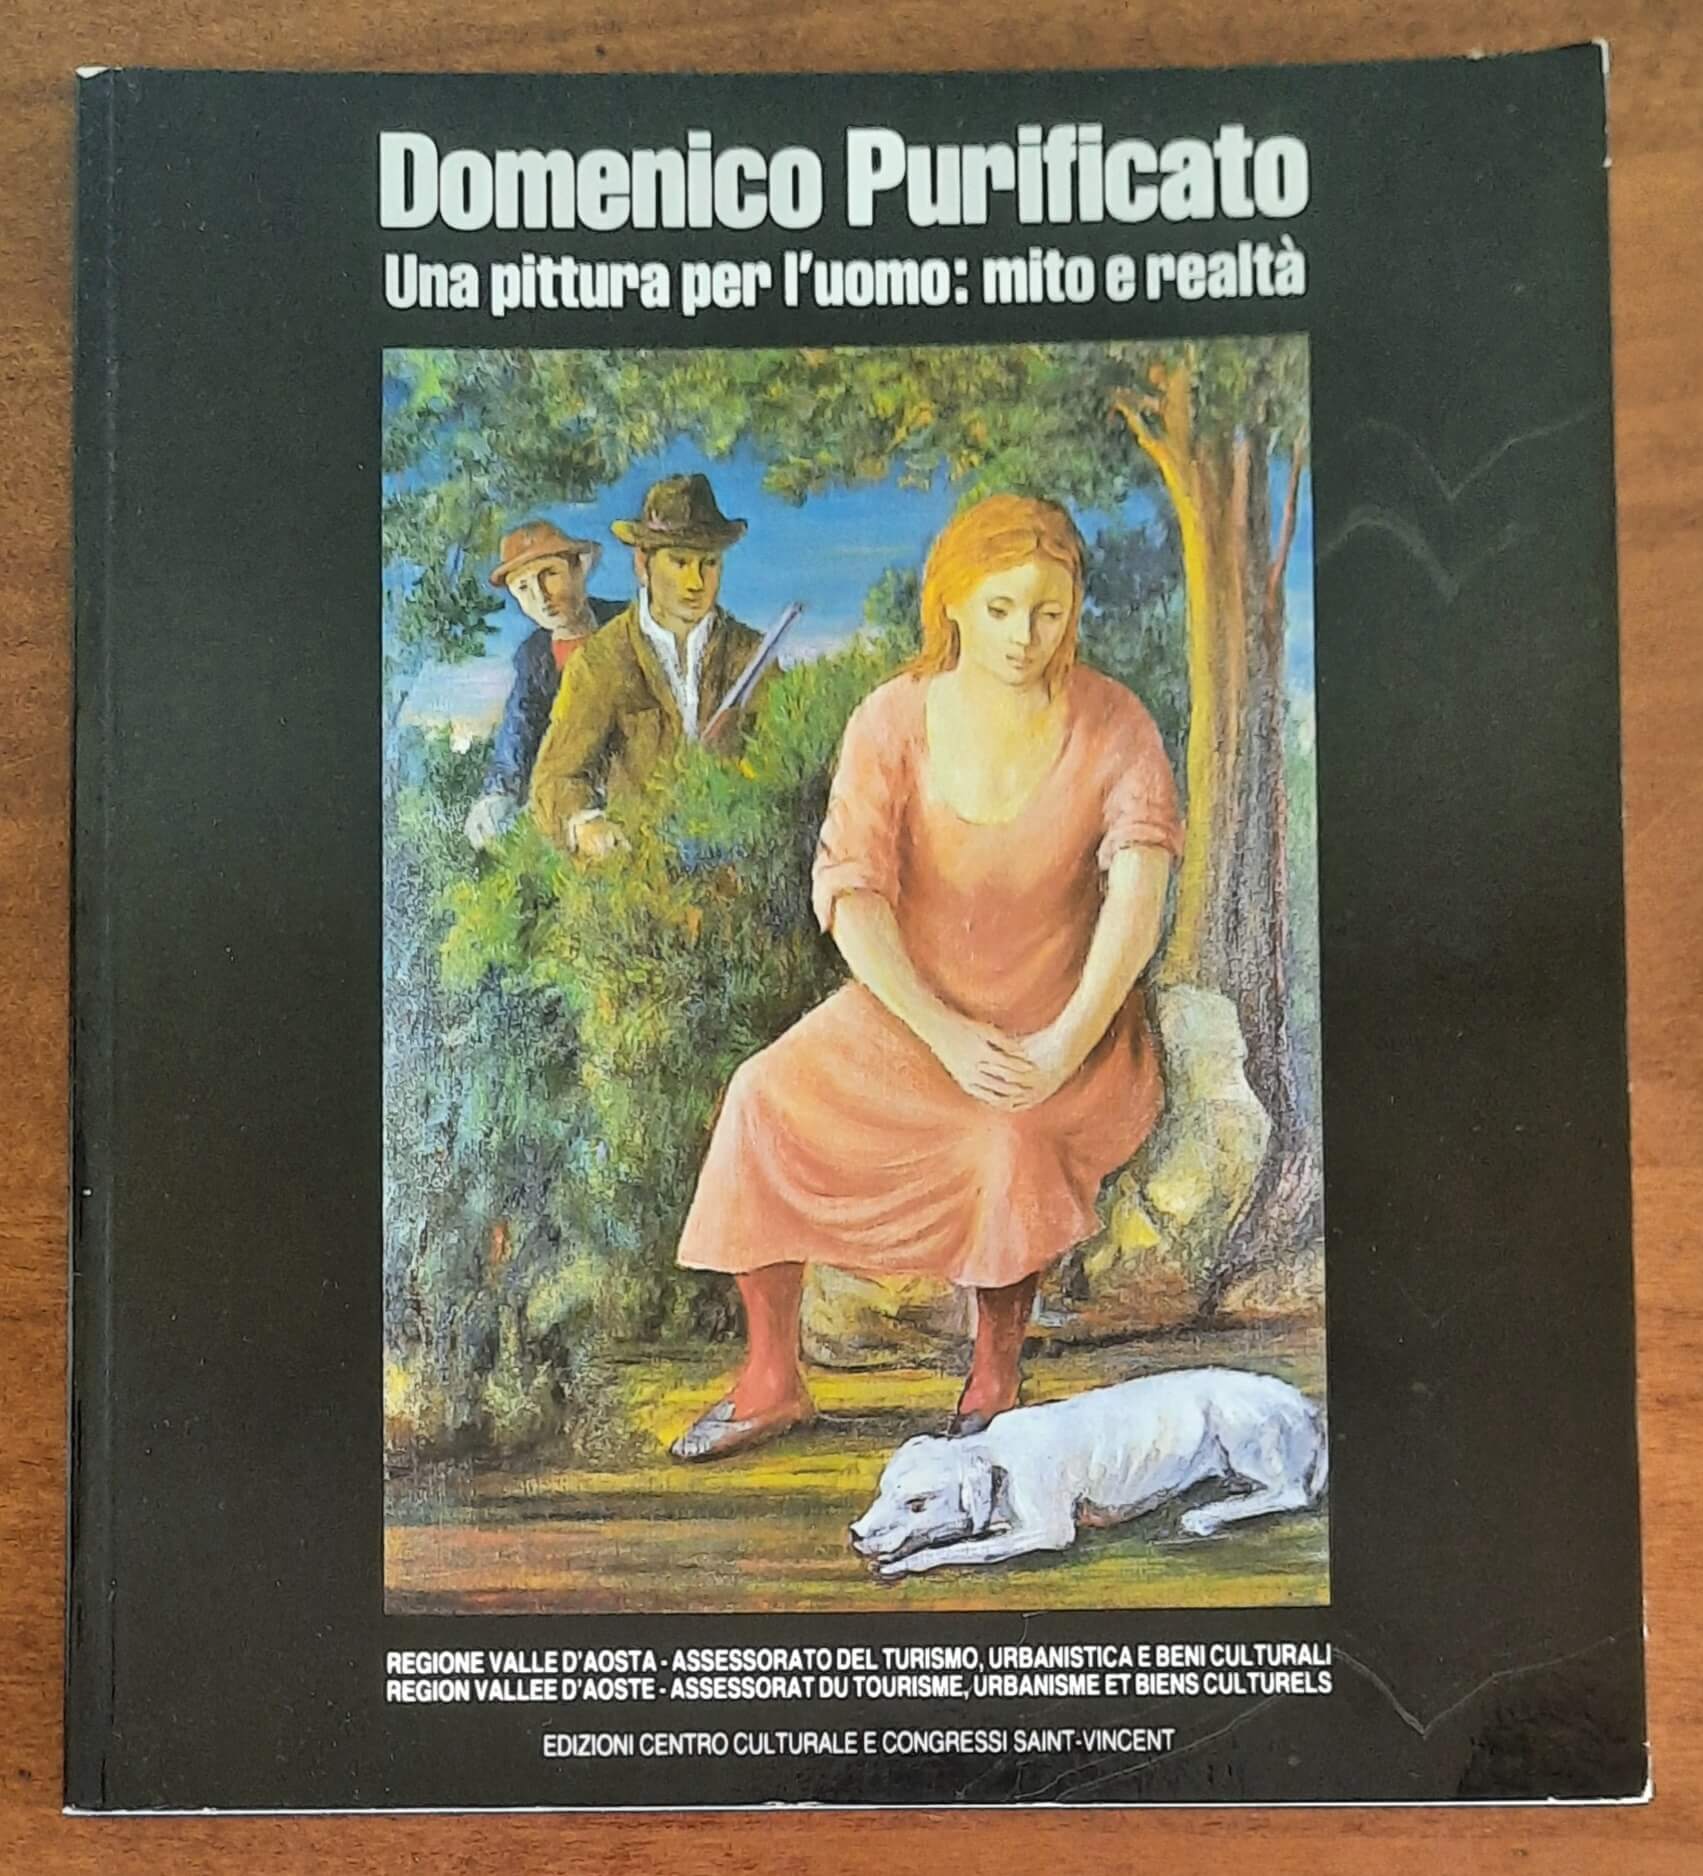 Domenico Purificato. Una pittura per l’uomo: mito e realtà